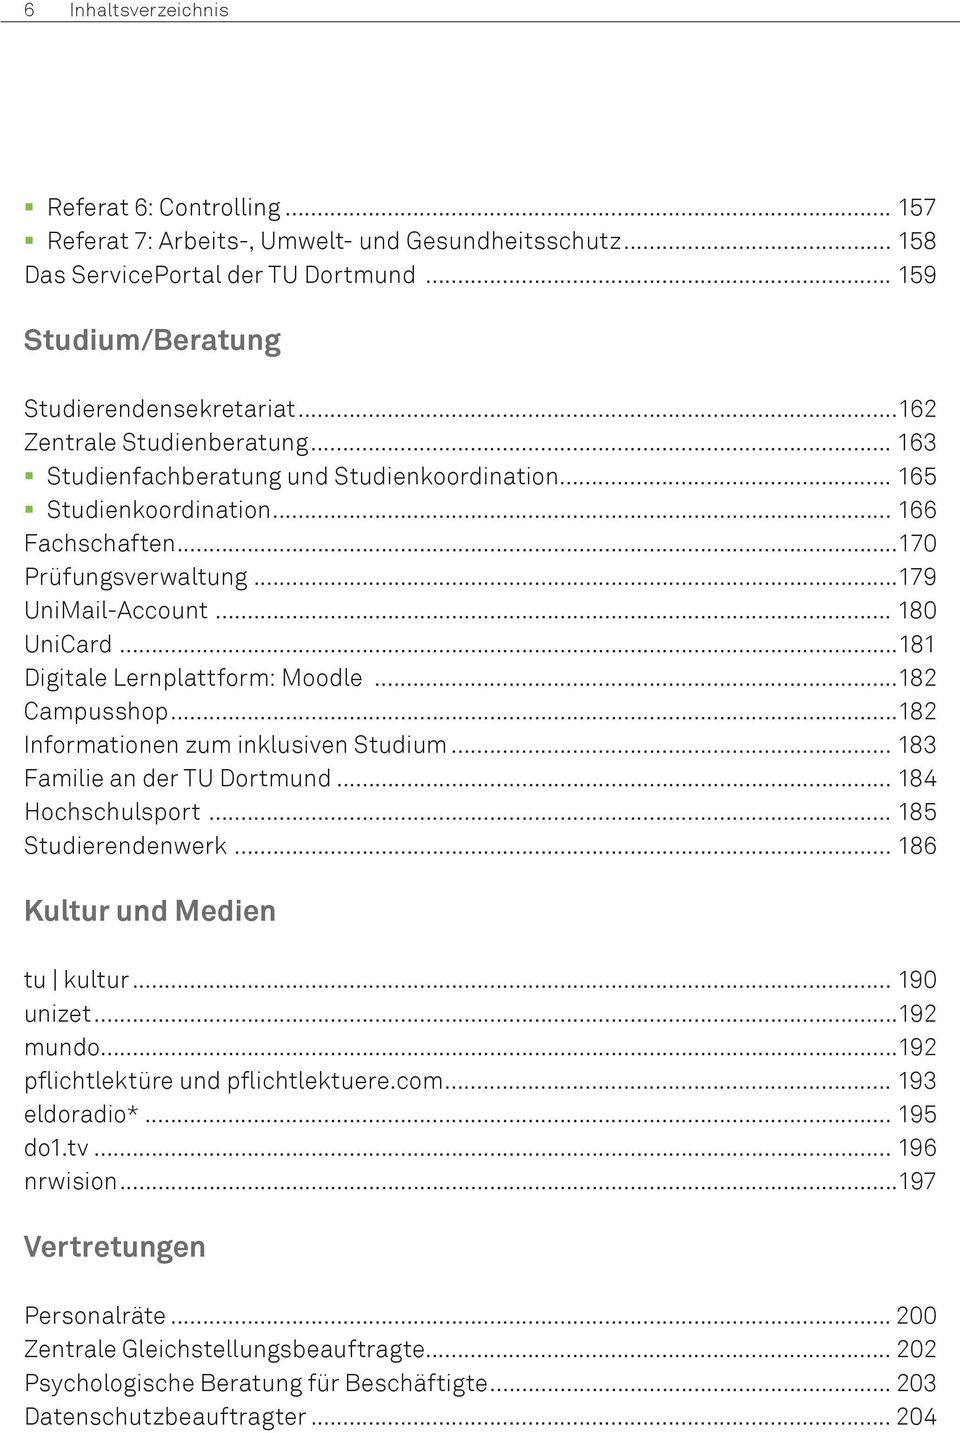 ..181 Digitale Lernplattform: Moodle...182 Campusshop...182 Informationen zum inklusiven Studium... 183 Familie an der TU Dortmund... 184 Hochschulsport... 185 Studierendenwerk.